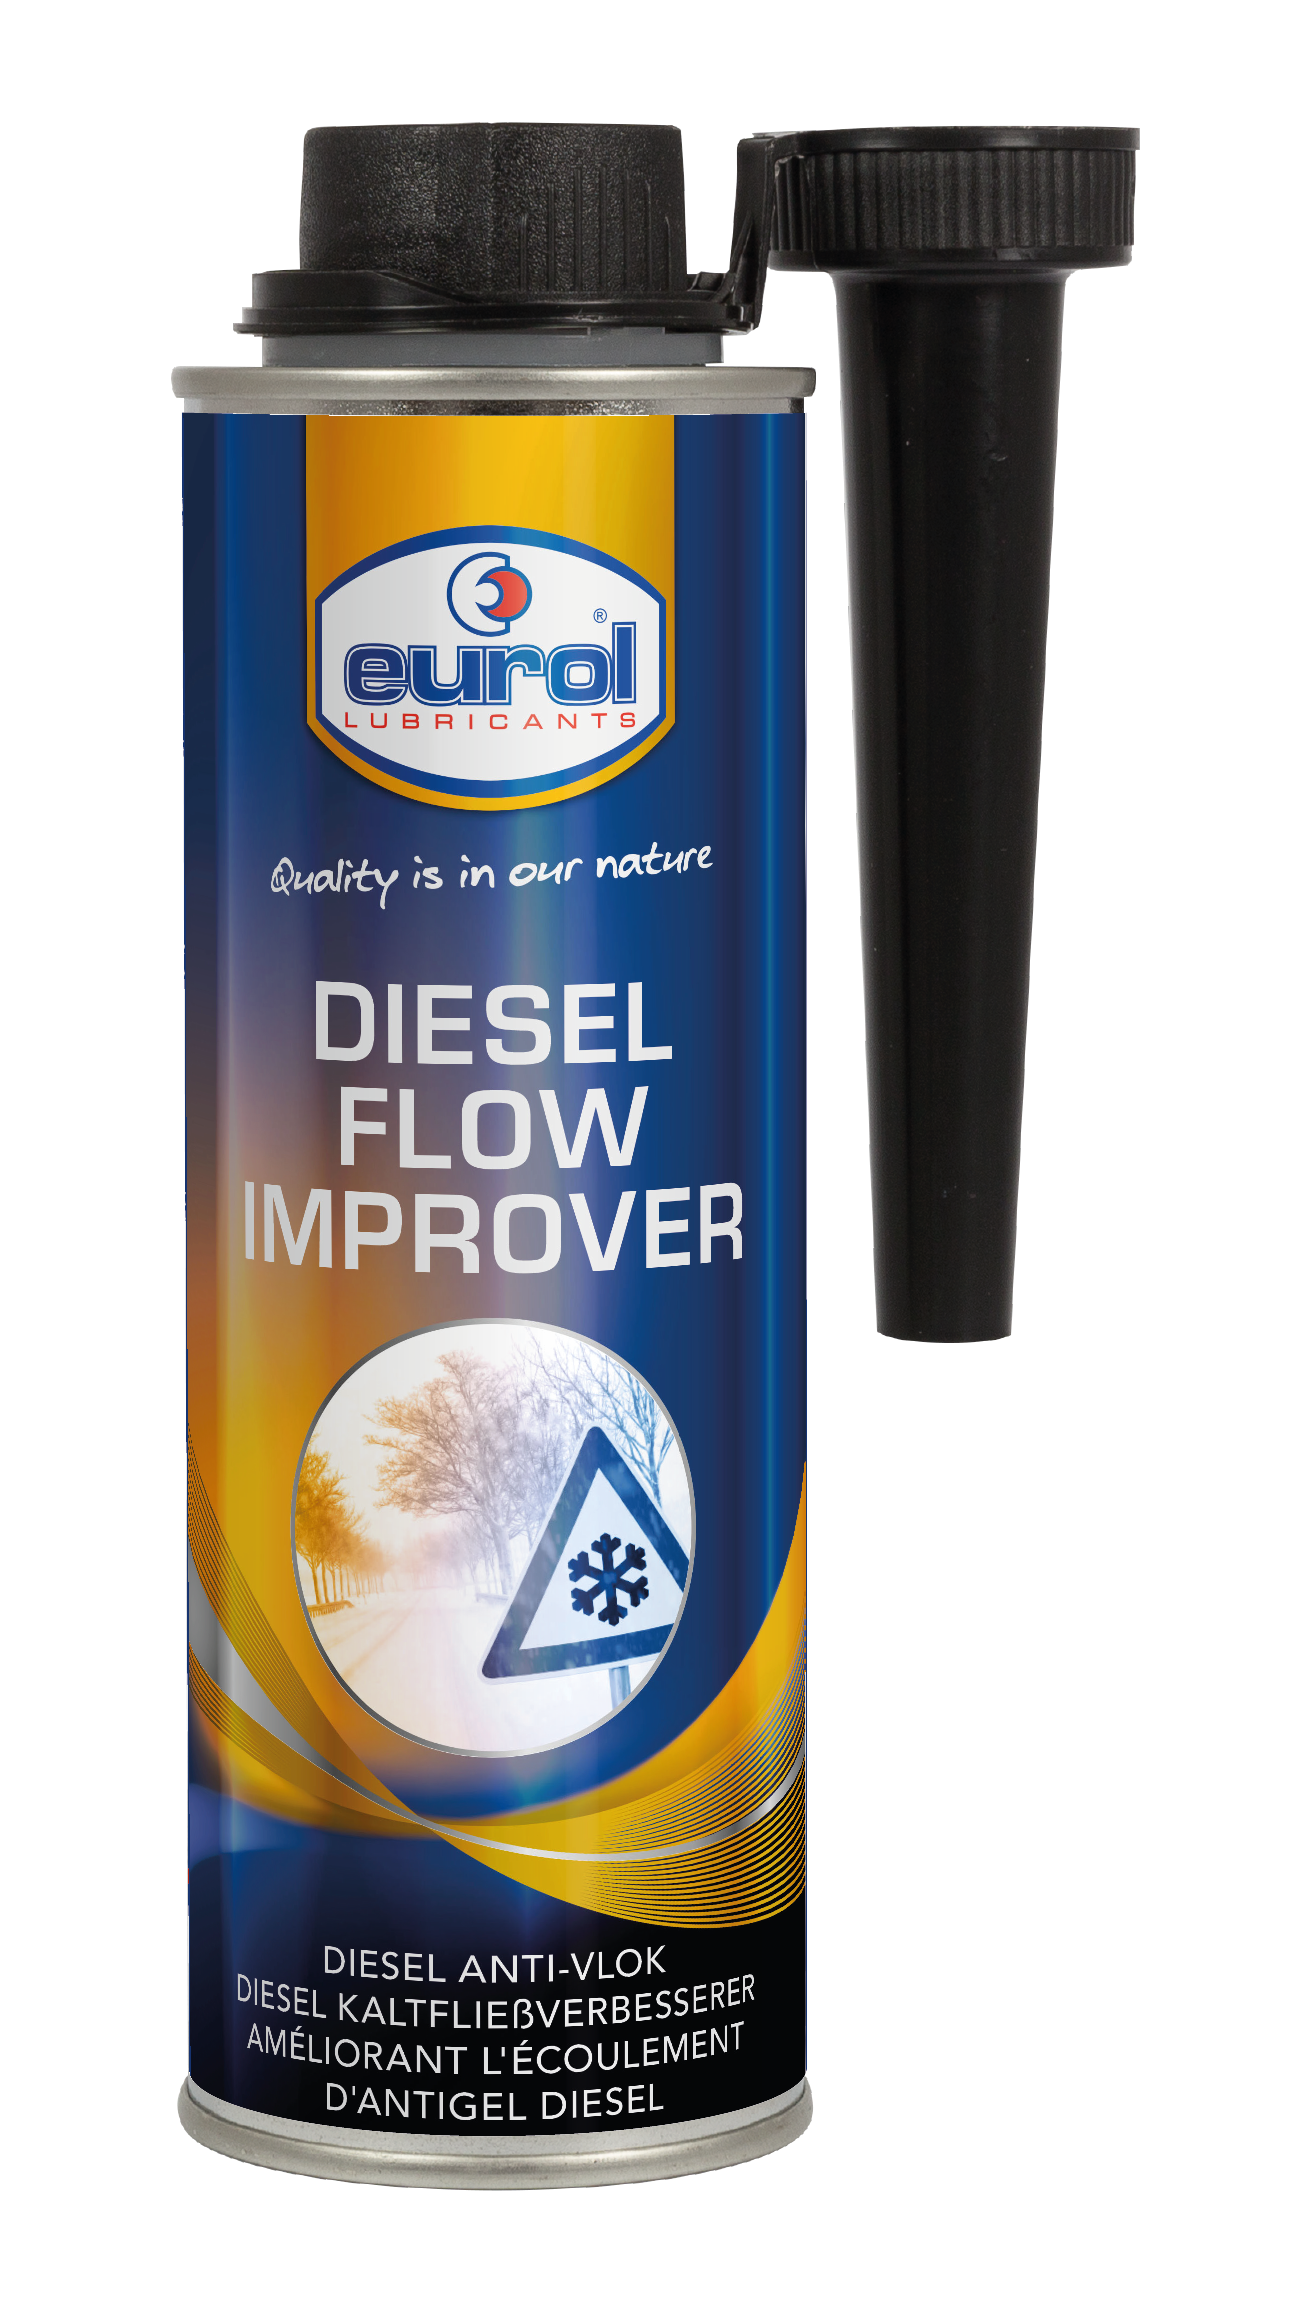 Diesel Flow Improver